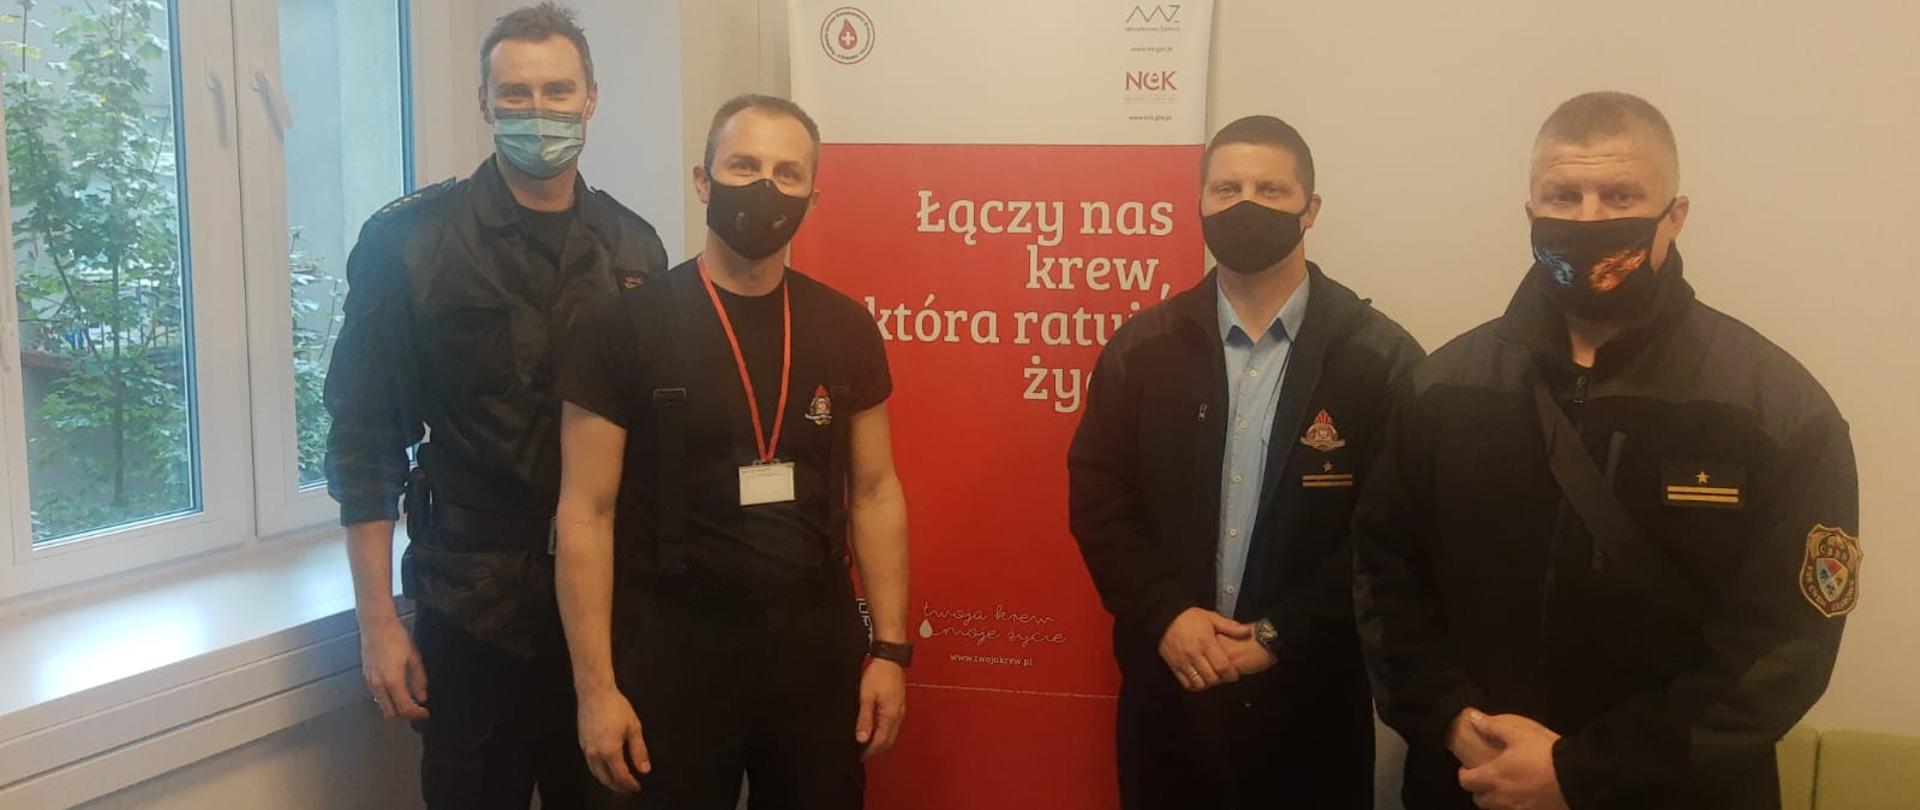 Zdjęcie przedstawia czterech strażaków Komendy Miejskiej PSP w Krakowie w maseczkach na twarzach na tle baneru "Łączy nas krew, która ratuje życie".